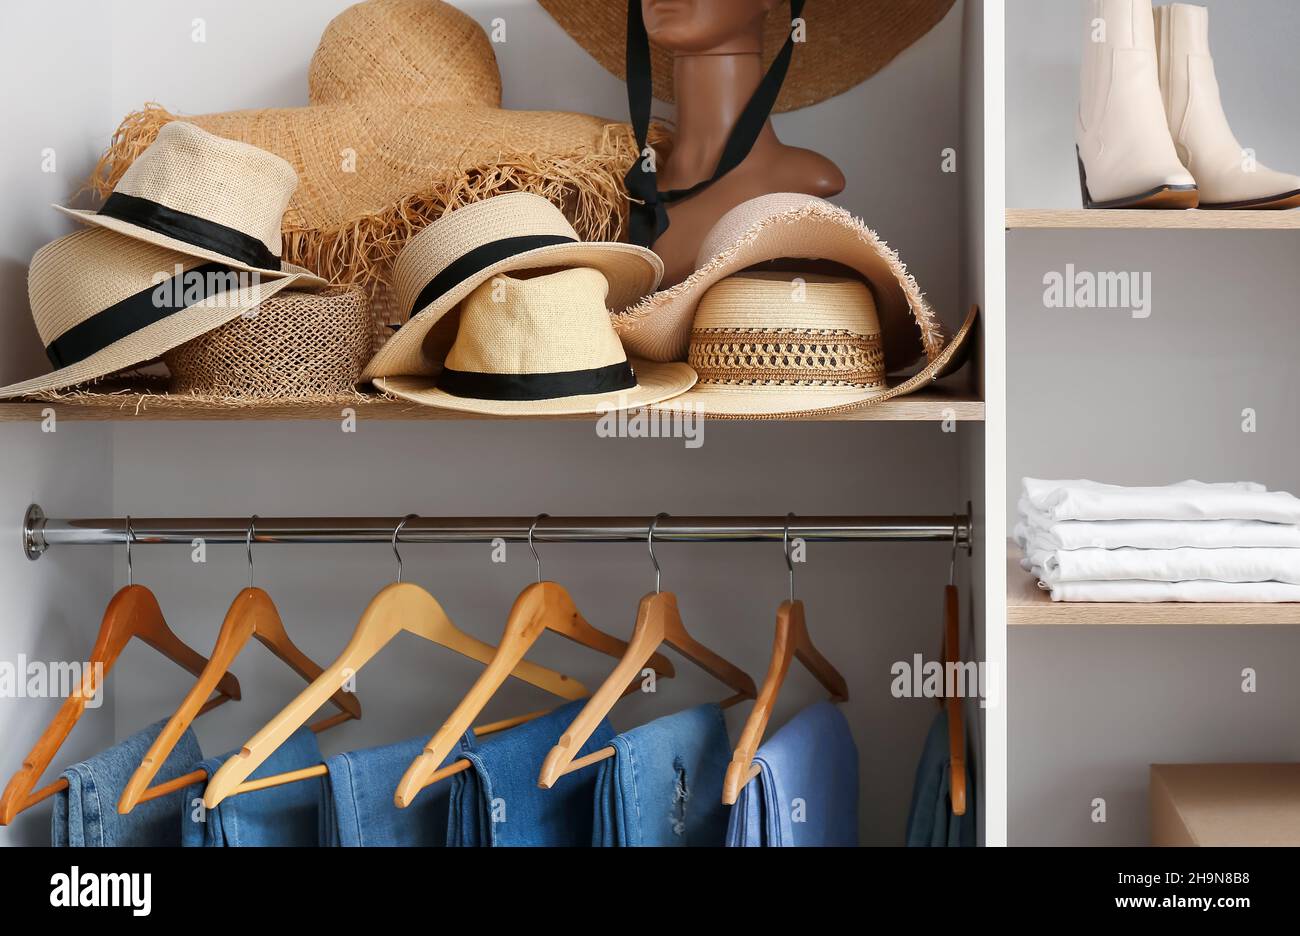 Chapeaux élégants sur une étagère dans une garde-robe Photo Stock - Alamy